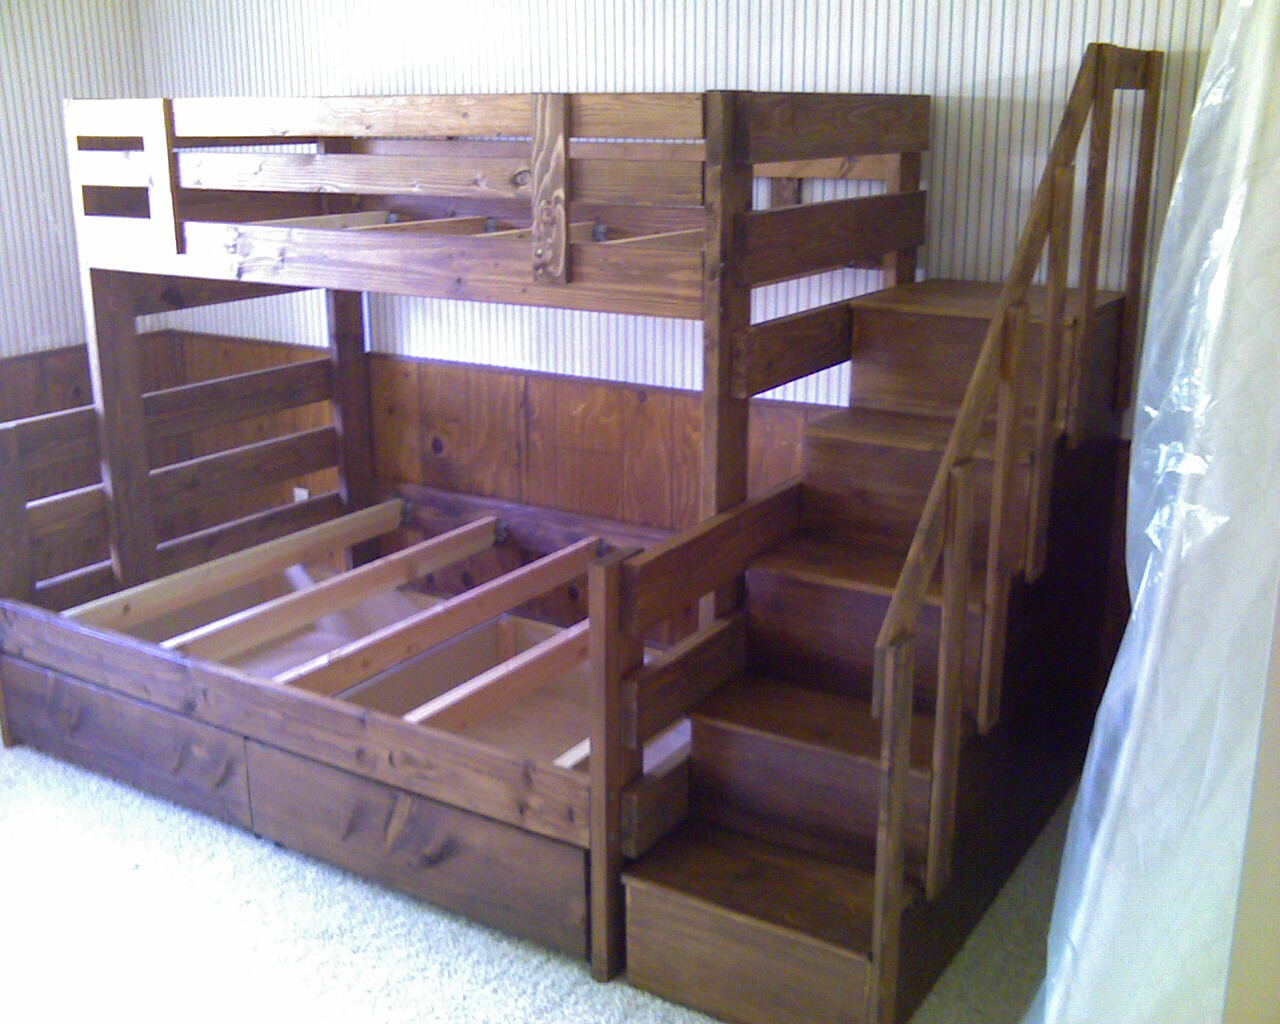 Todd S Custom Bunk Beds The Wood, Caravan Bunk Bed Builder